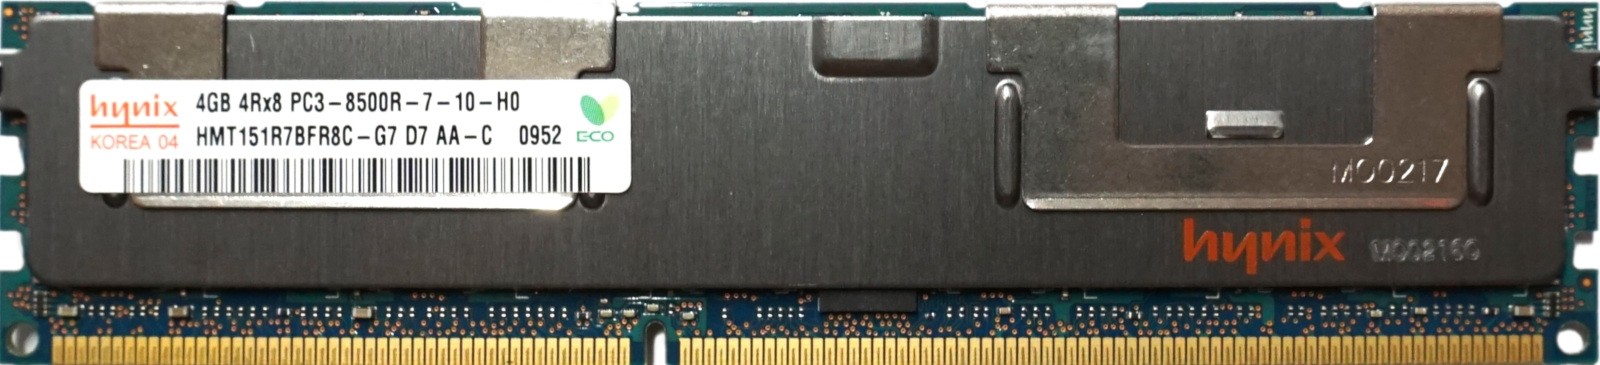 Hynix - 4GB PC3-8500R (DDR3-1066Mhz, 4RX8)